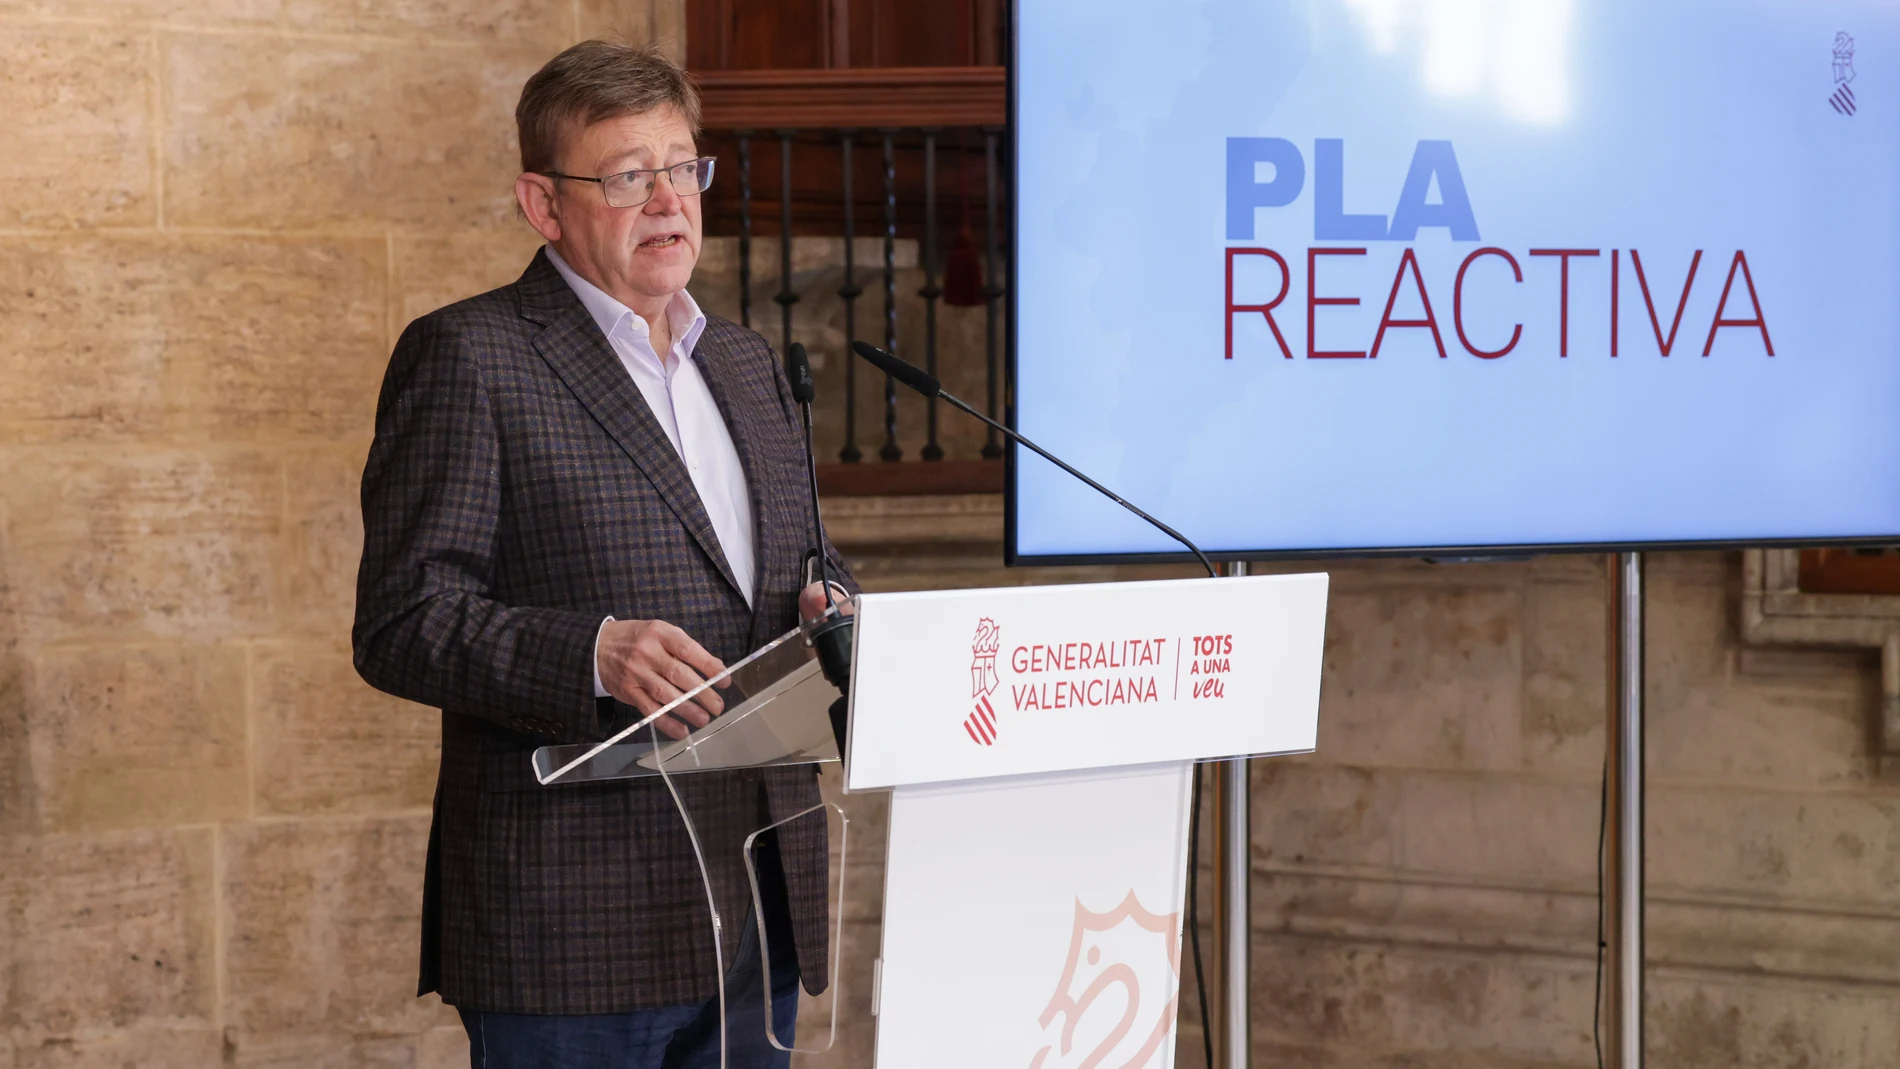 El presidente de la Generalitat, Ximo Puig, ha anunciado las primeras medidas del Plan Reactiva